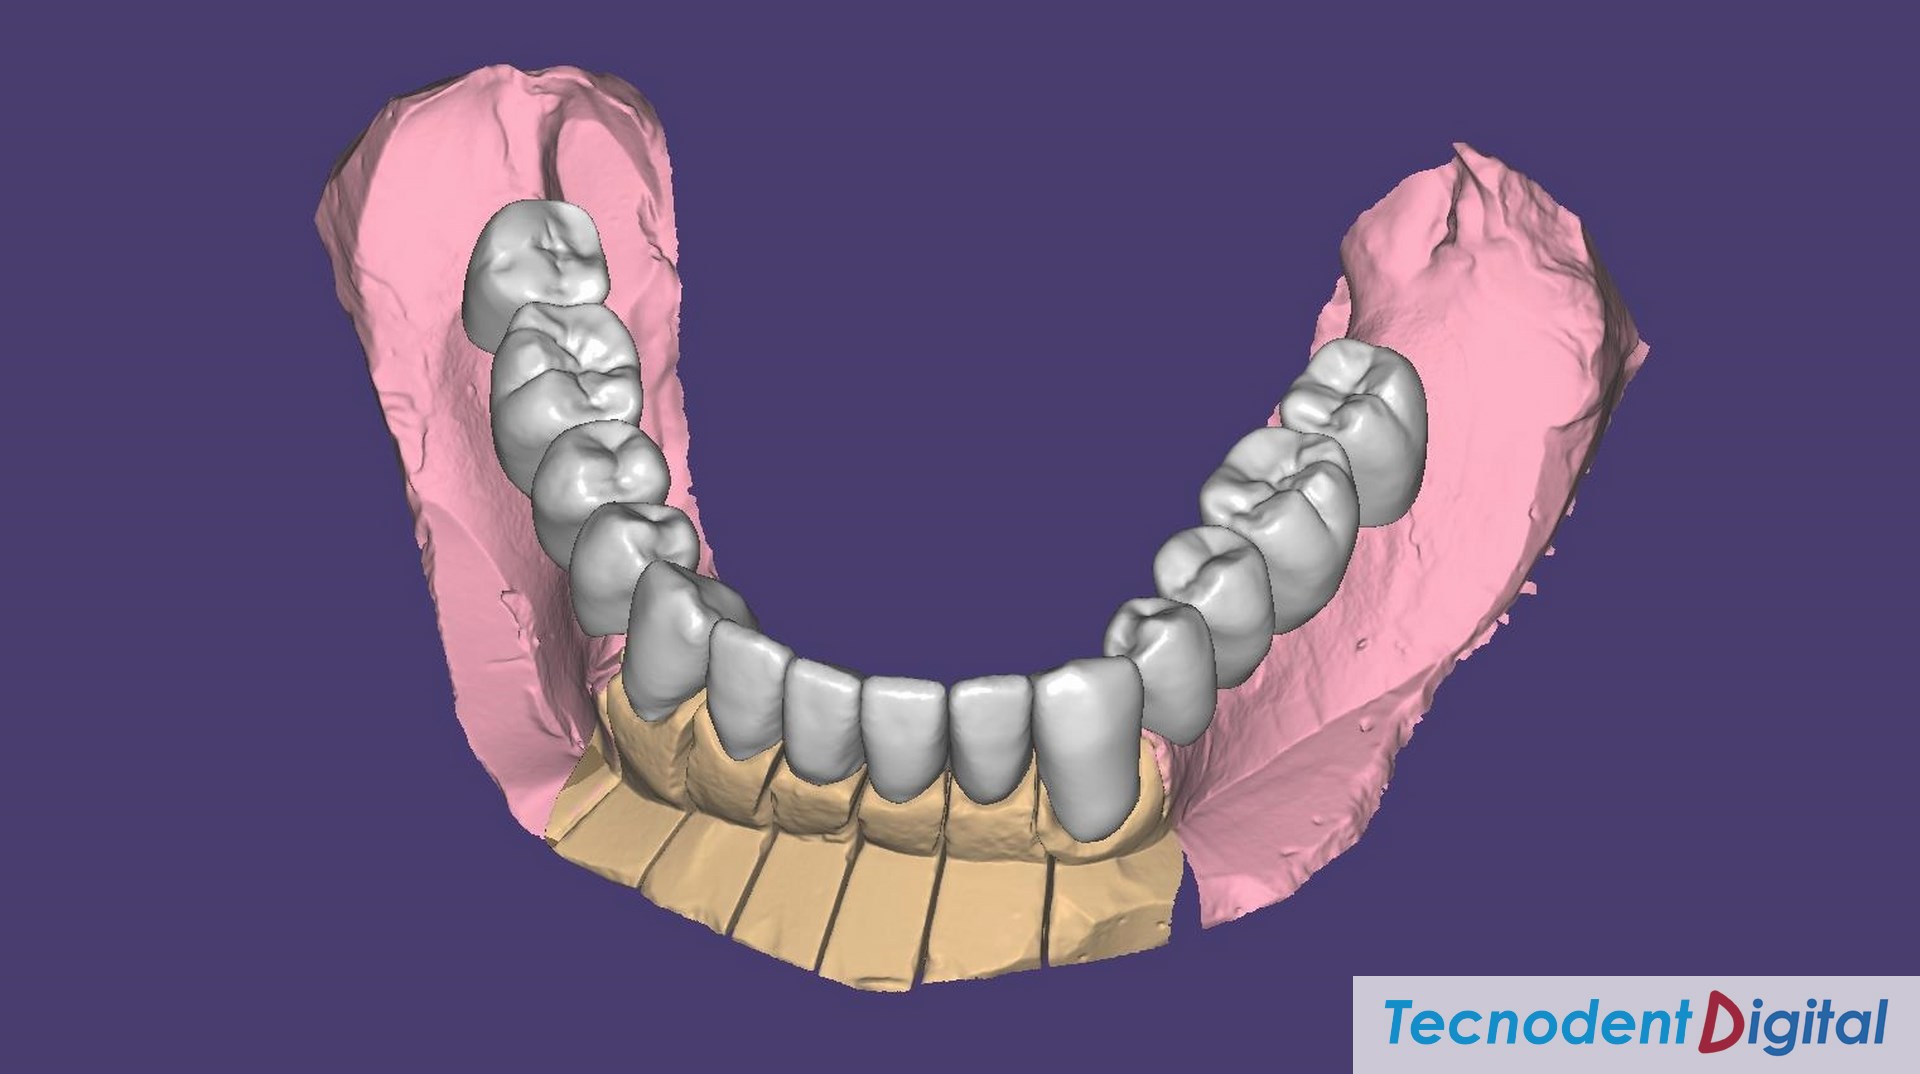 Coronas-de-zirconio-implantes-metal-ceramica-Rehabilitacion-oral-Laboratorio-Gandia